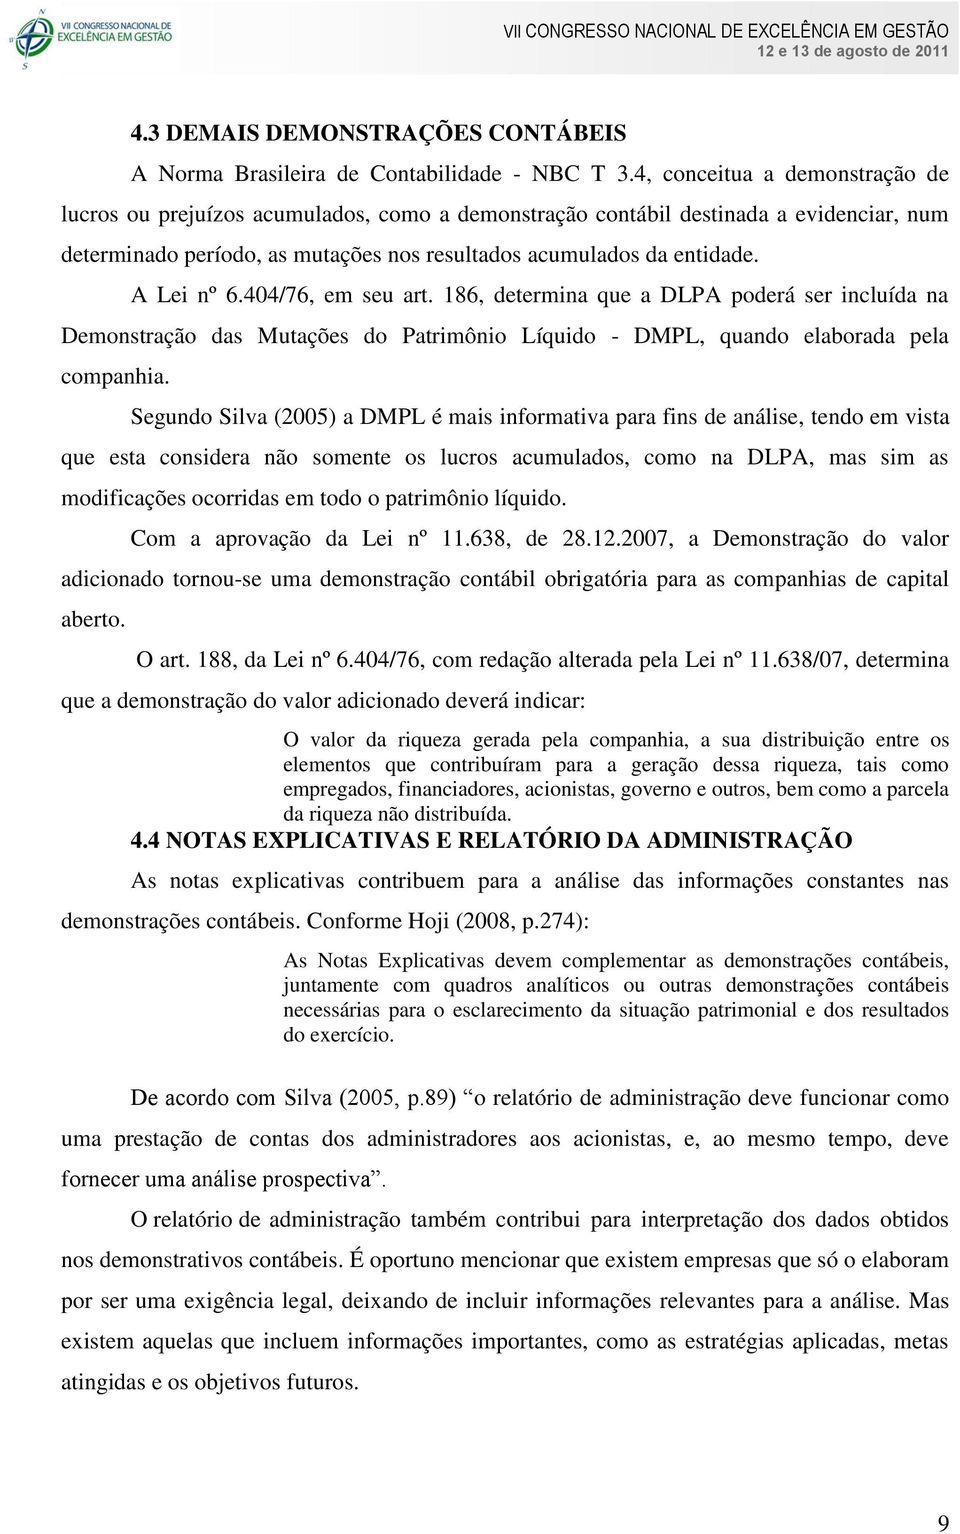 A Lei nº 6.404/76, em seu art. 186, determina que a DLPA poderá ser incluída na Demonstração das Mutações do Patrimônio Líquido - DMPL, quando elaborada pela companhia.